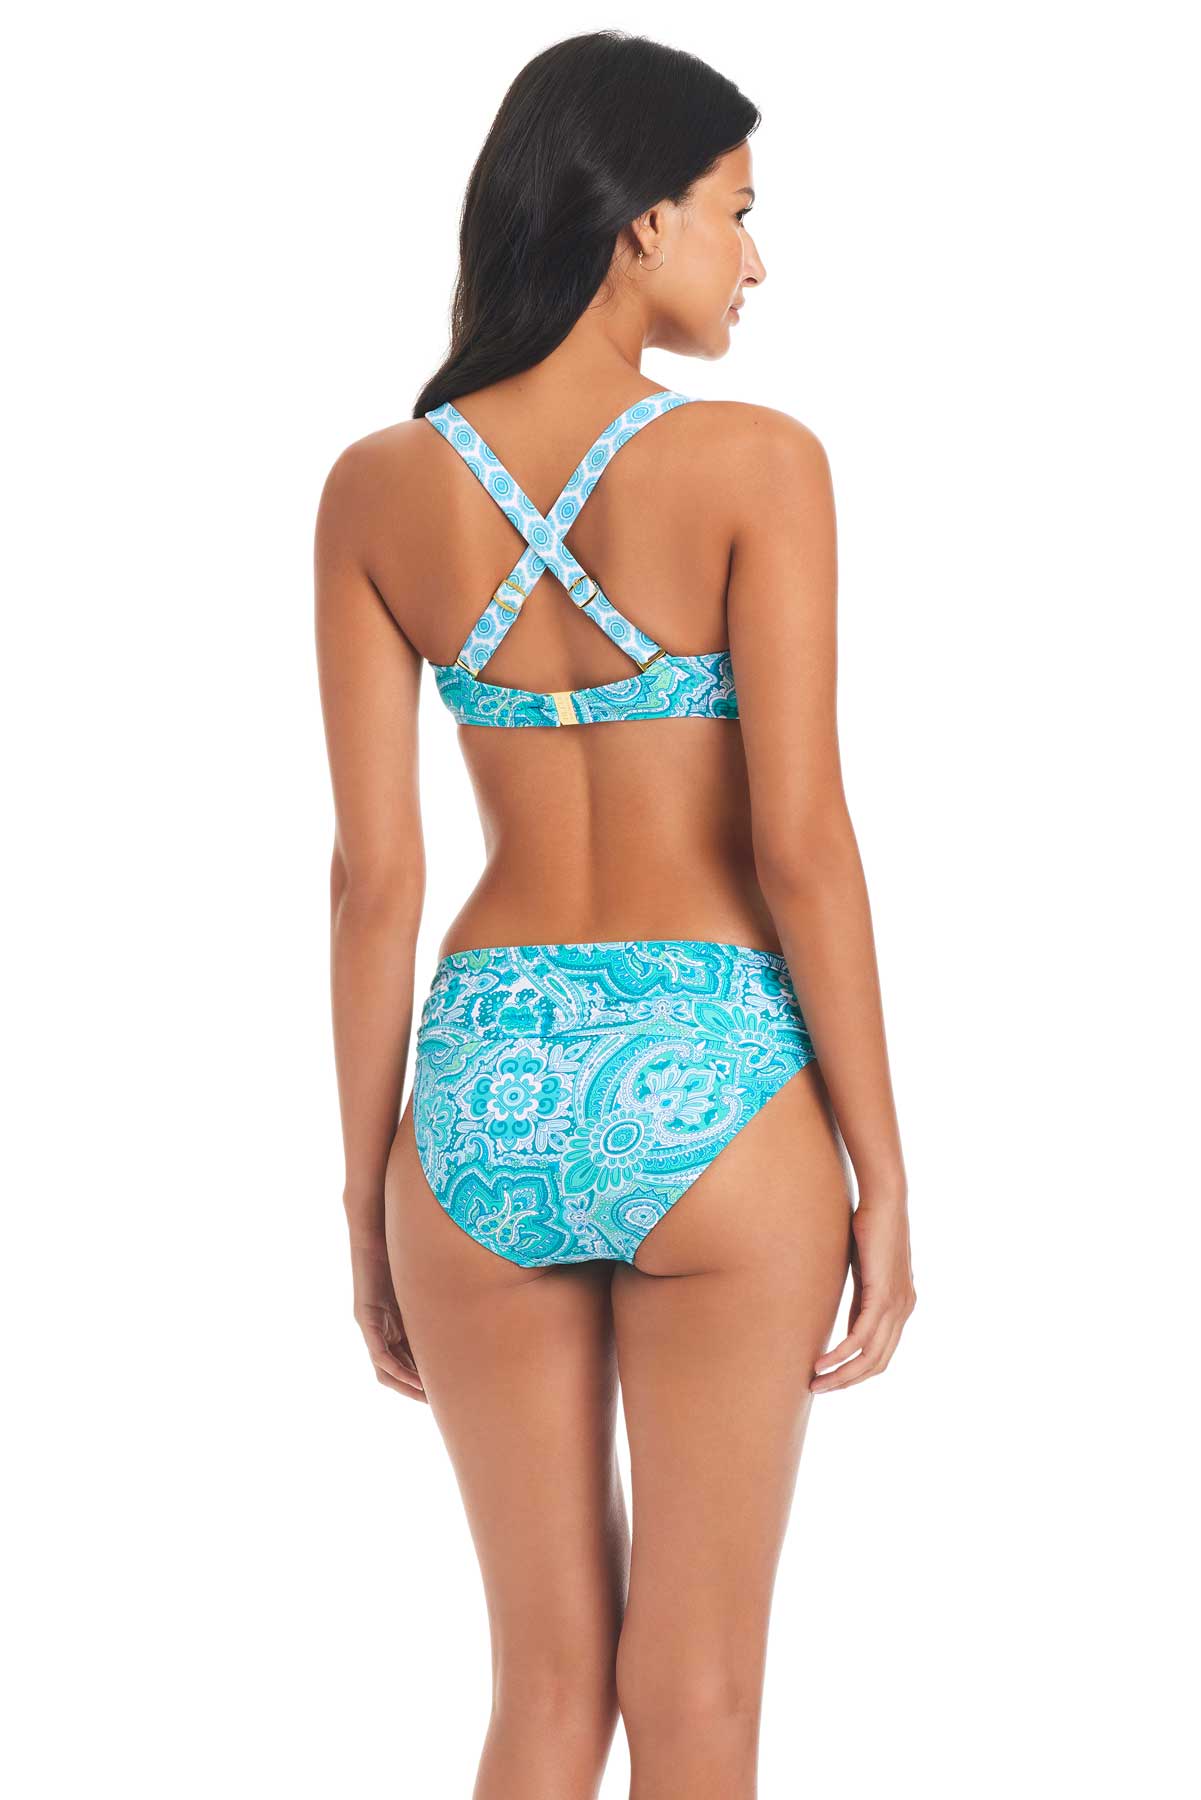 Bleu: Coastal Cool Over The Shoulders D-Cup Bikini Top – Swim City